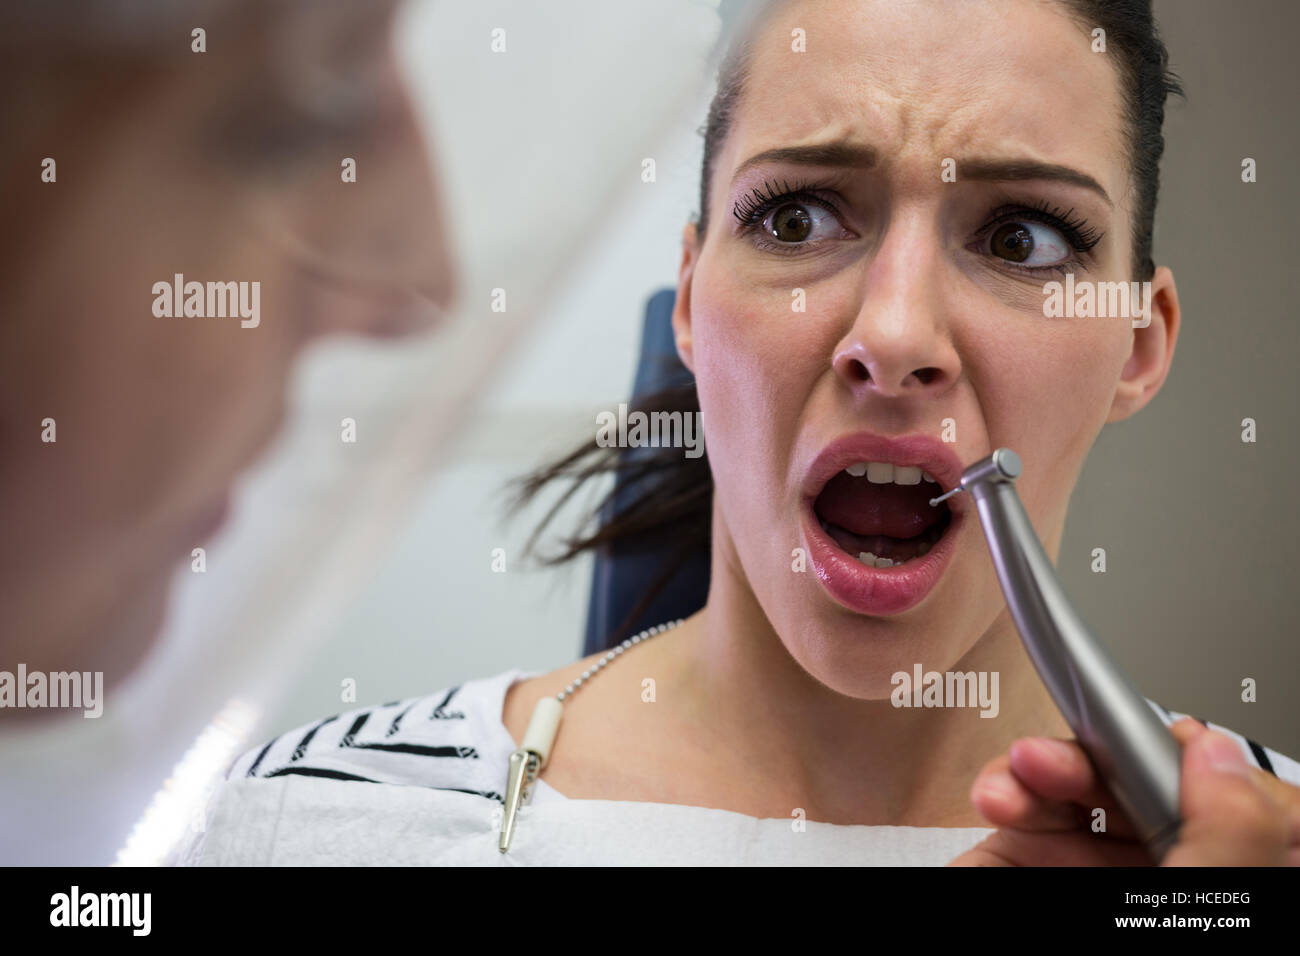 Jeune femme peur pendant un examen dentaire Banque D'Images